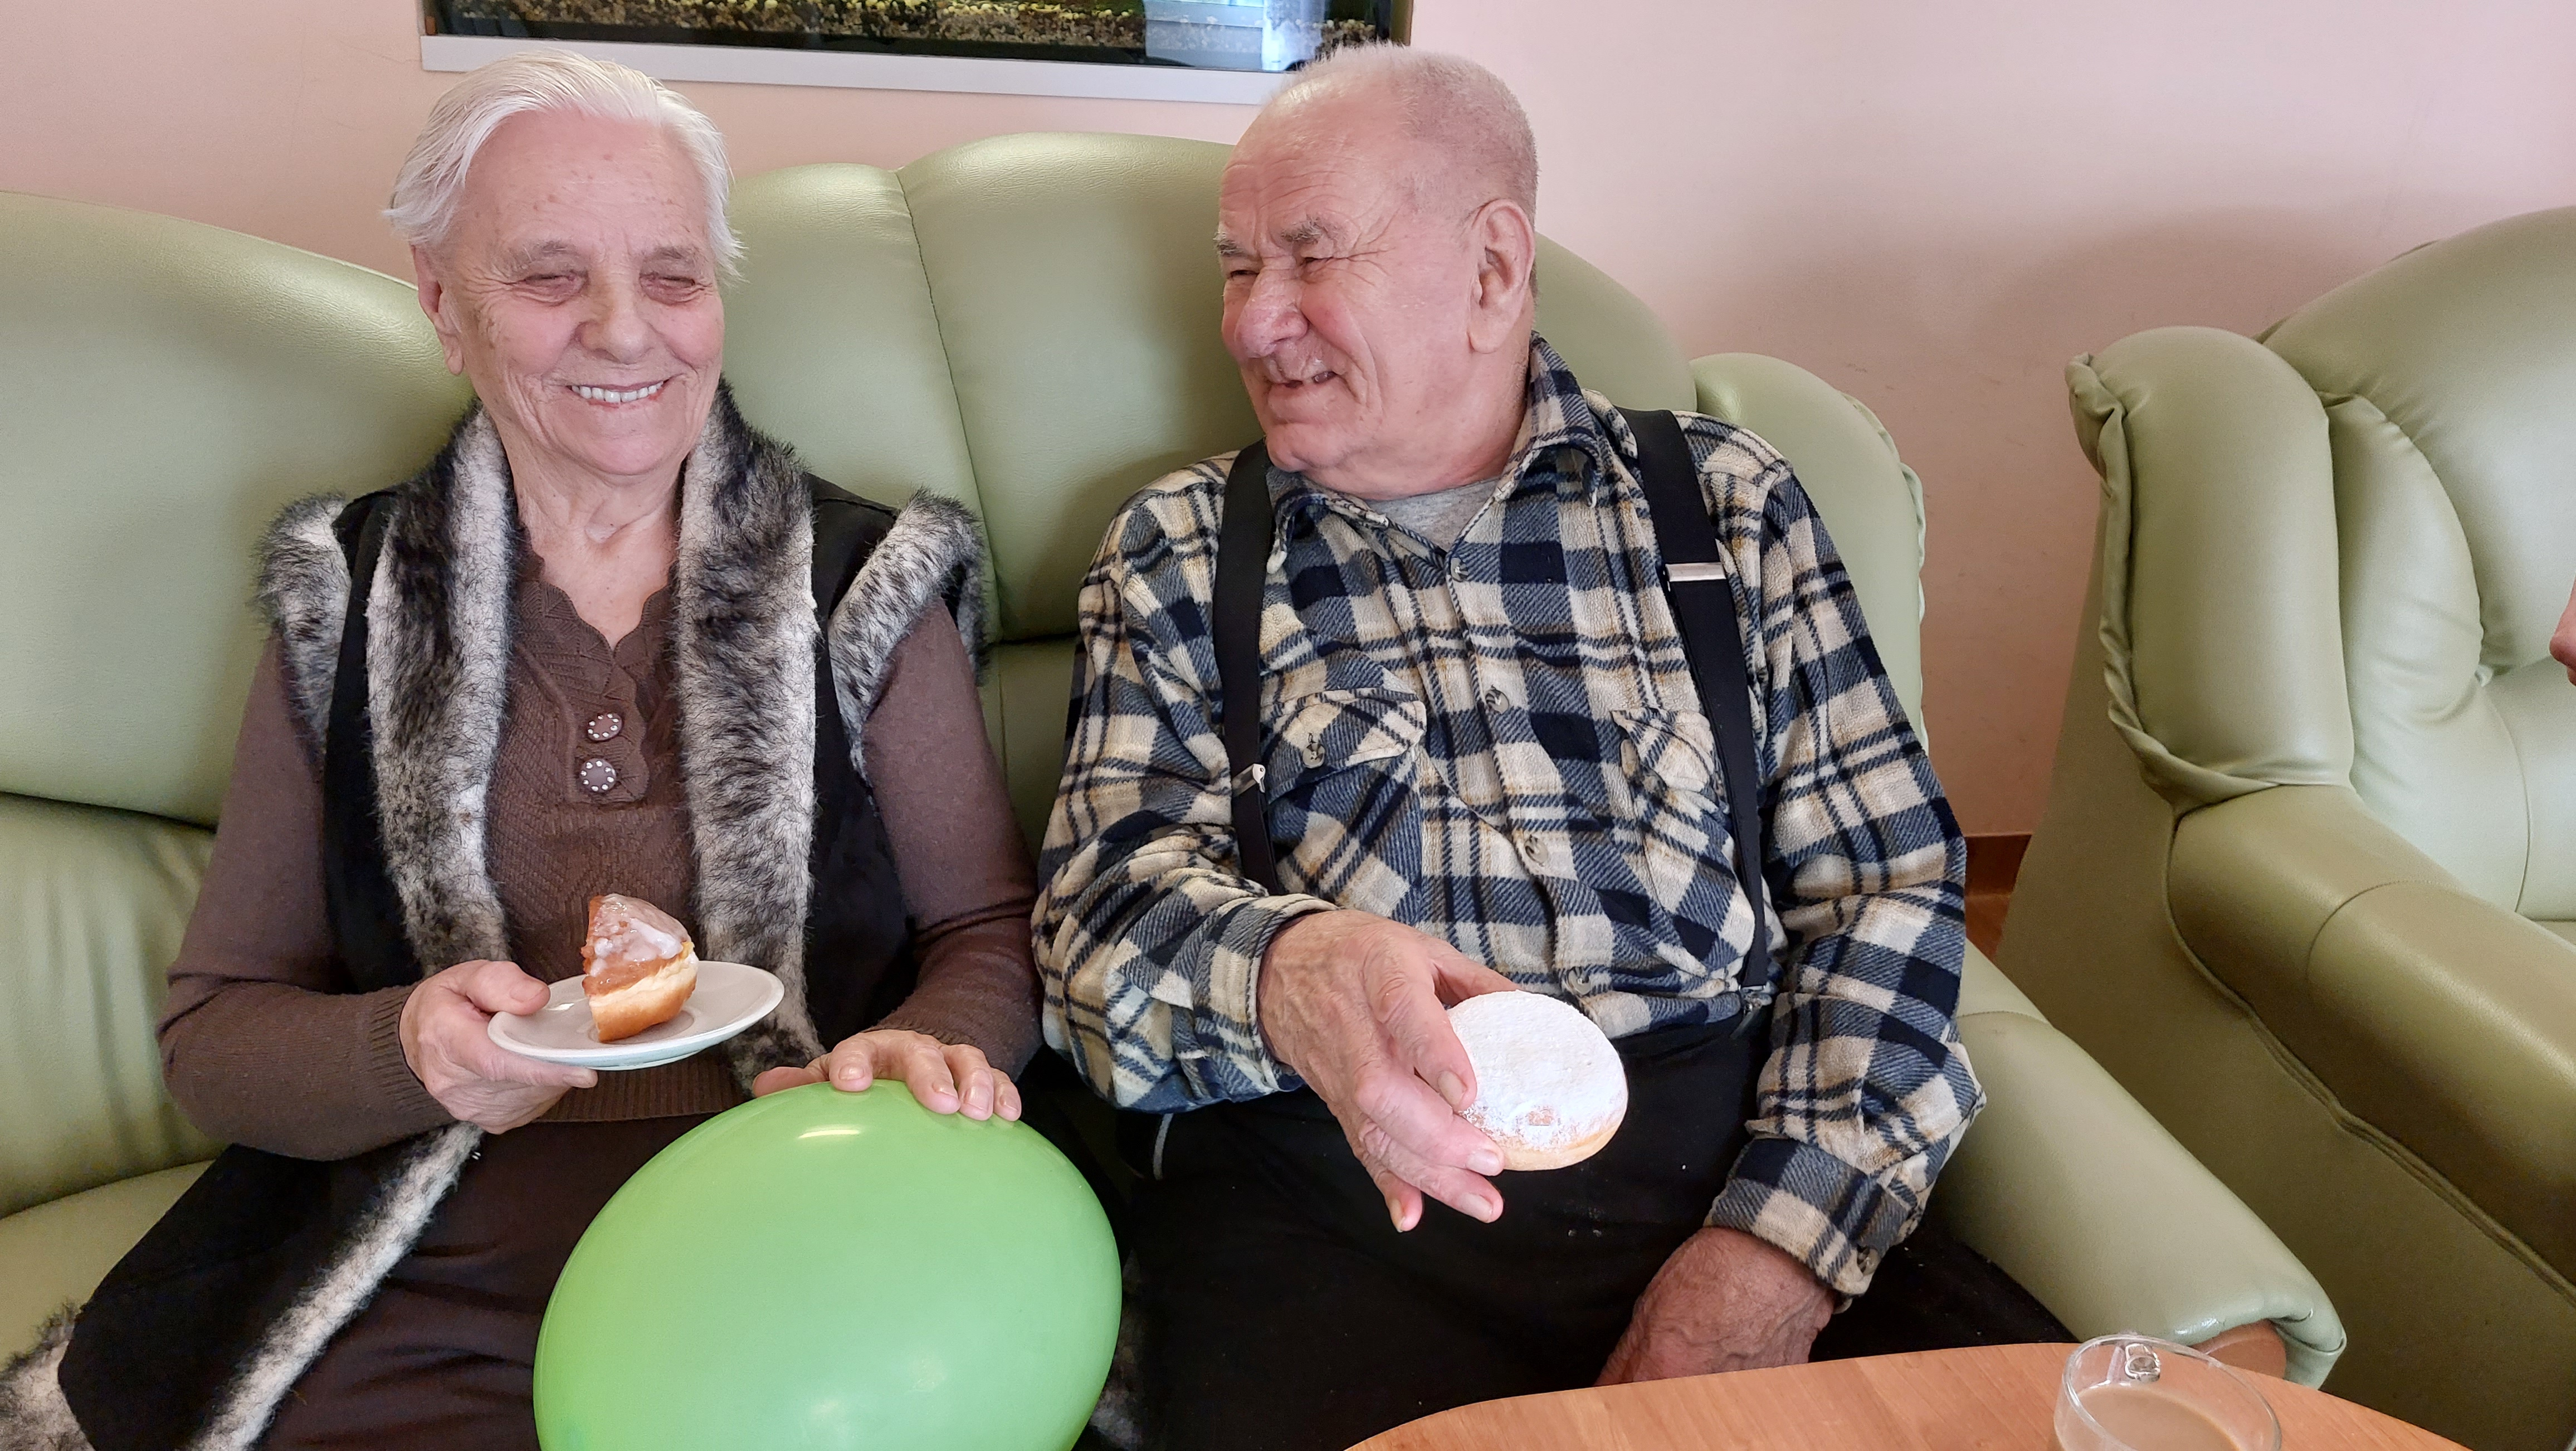 Seniorka oraz Senior siedzą na kanapie i jedzą pączki